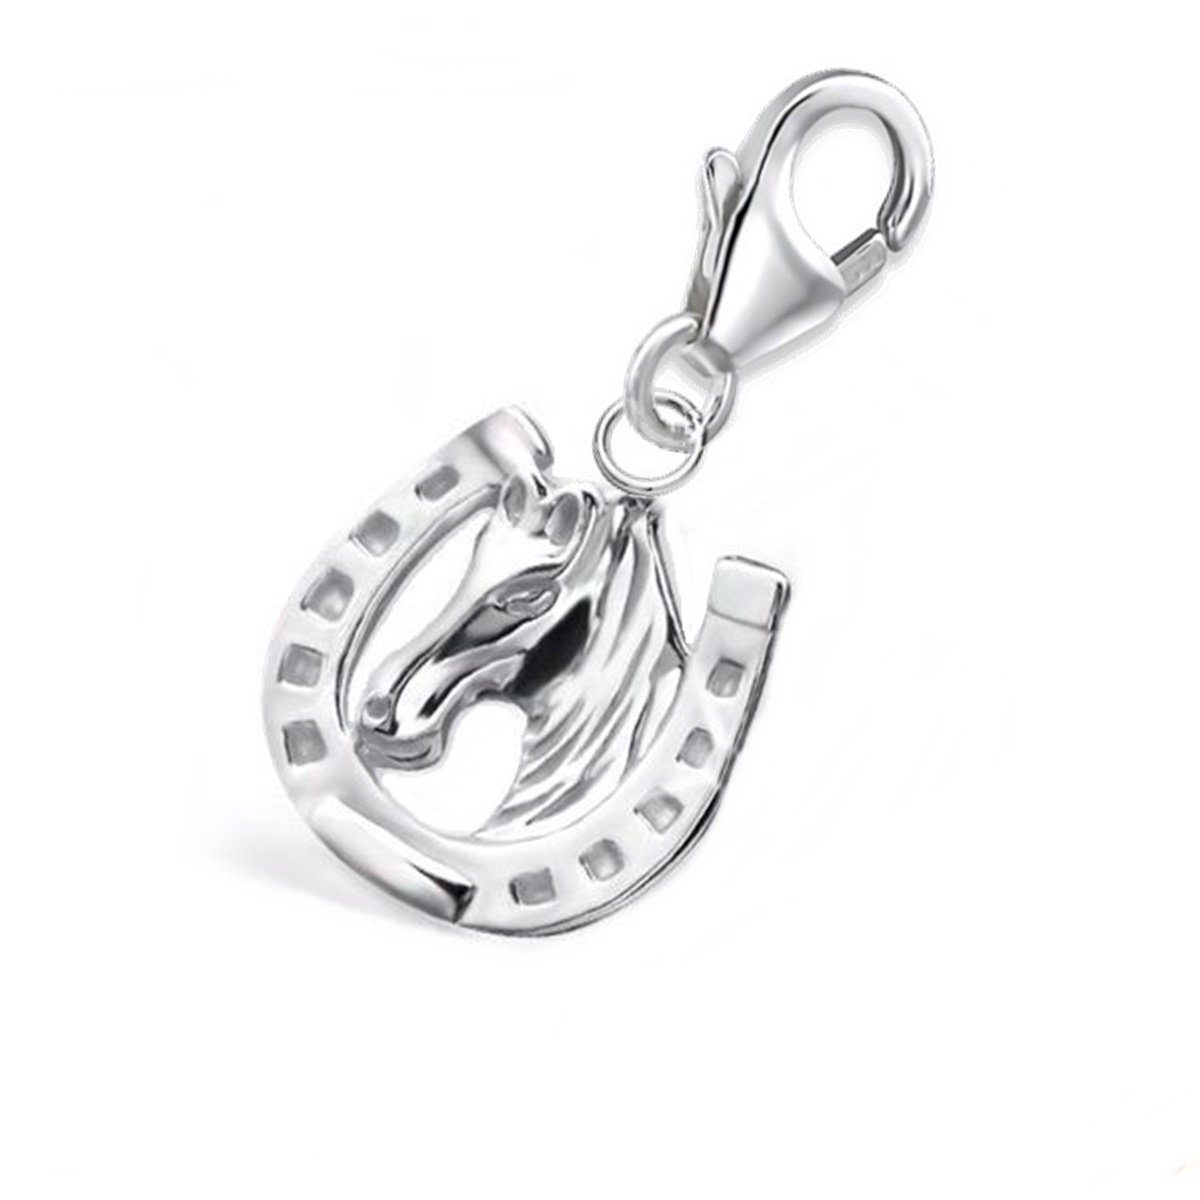 Goldene Hufeisen Charm-Einhänger Karabiner Charm Anhänger für Bettelarmband  Hufeisen Pferd 925 Silber (inkl. Etui), für Gliederarmband oder Halskette